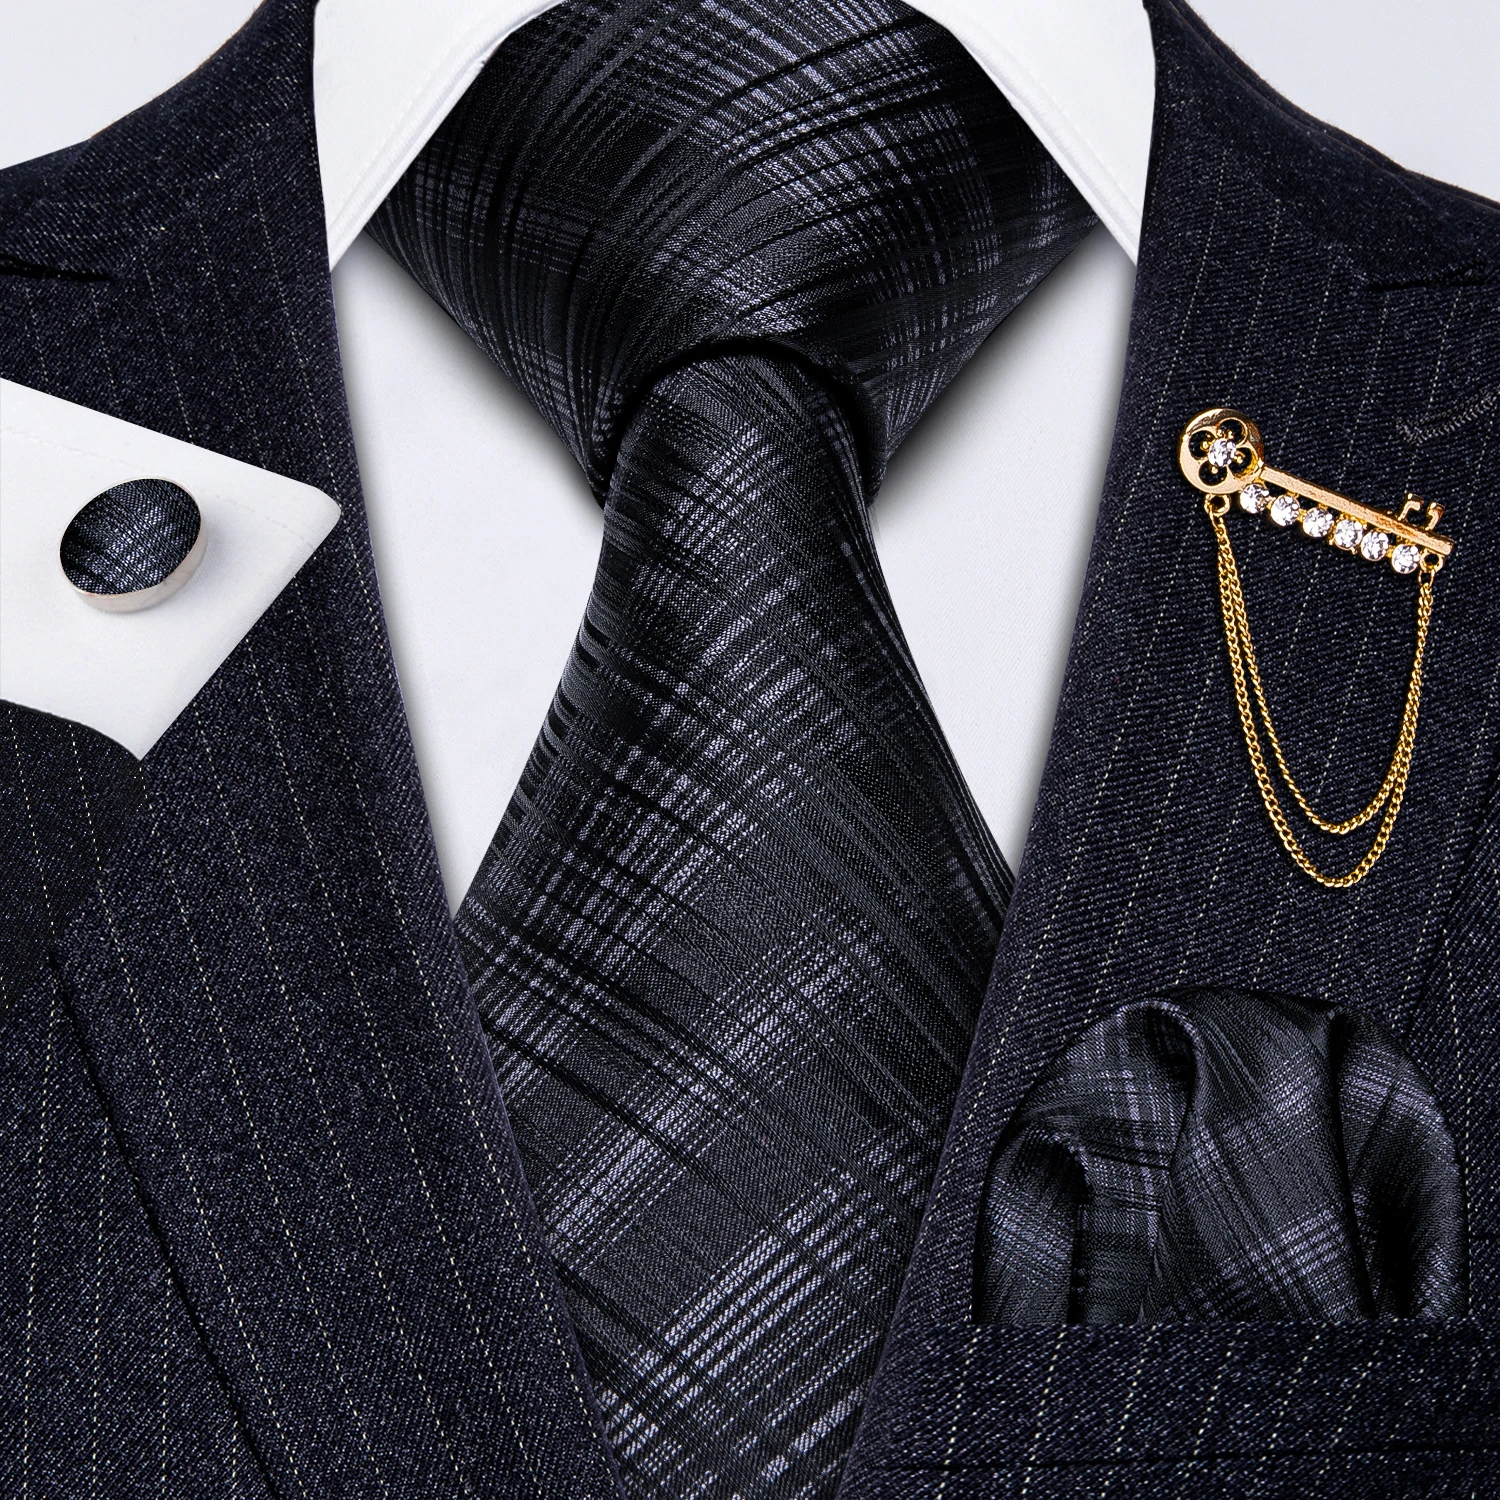 

Men Necktie Gold Brooch Black Plaid Tie Set Fashion Silk Necktie Handkerchief Cufflink Wedding Business Party Barry.Wang GS-5210